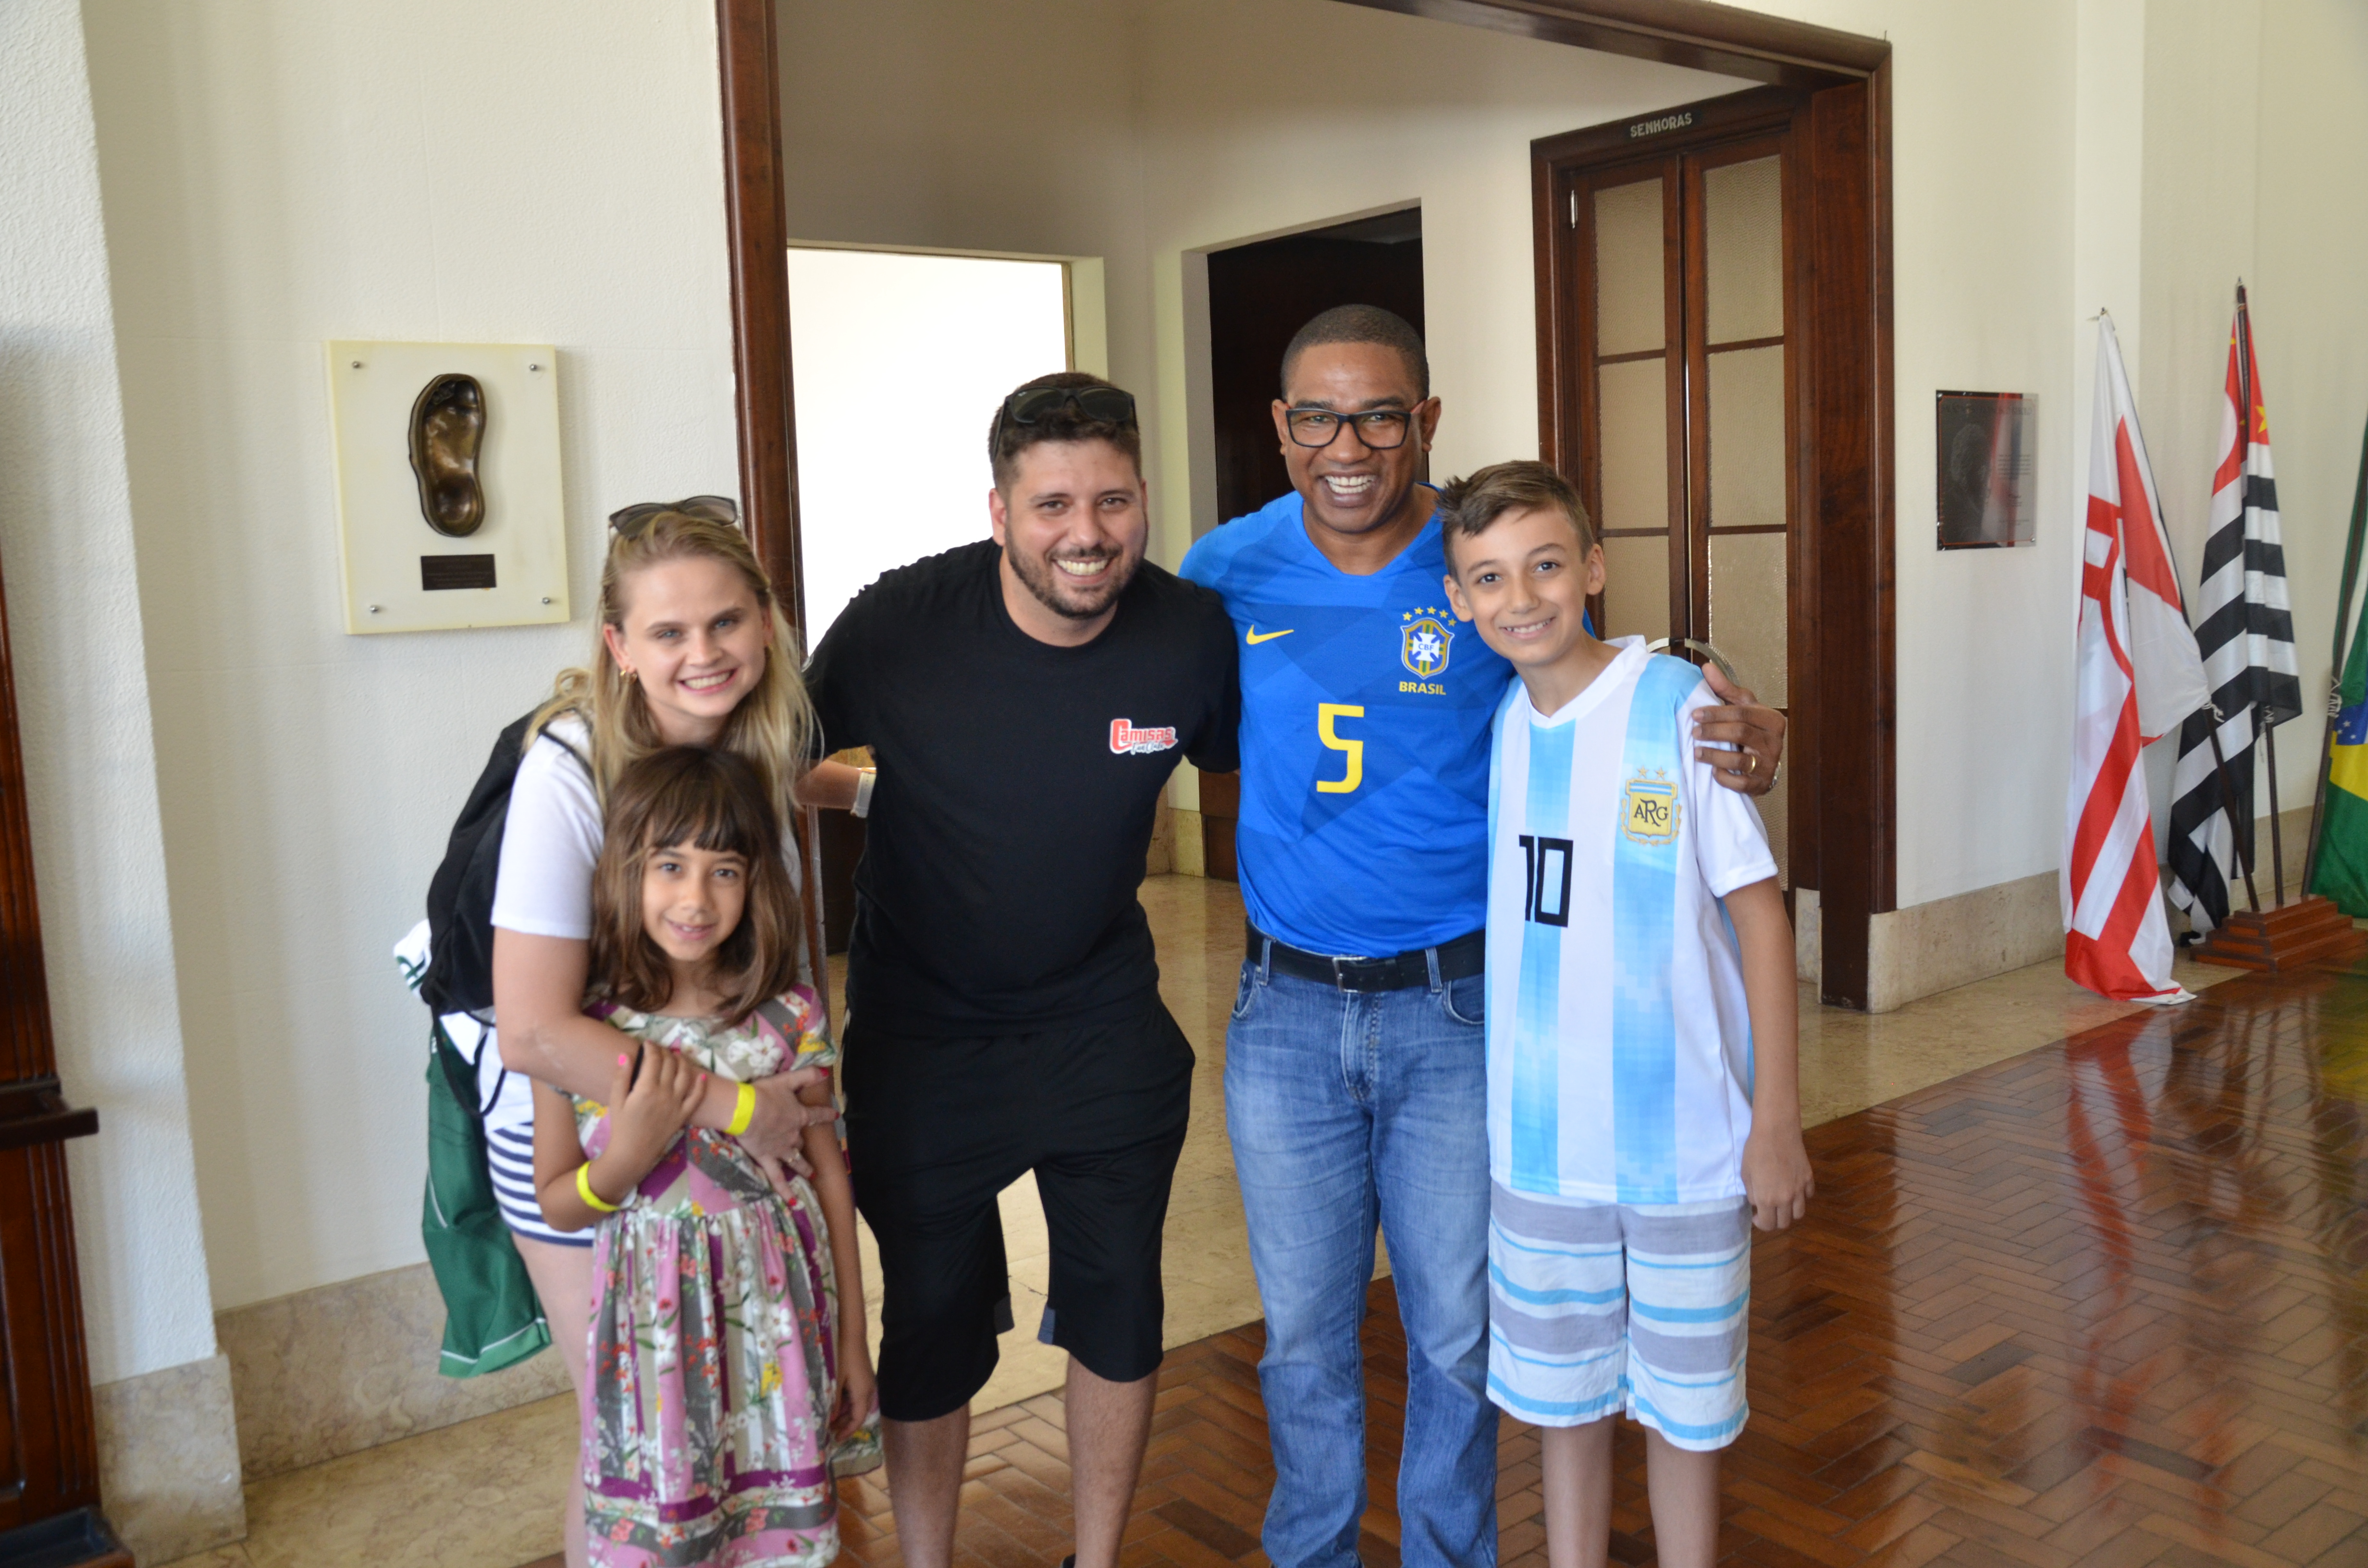 César Sampaio posa para foto com família participante do Pacaemtour, dentro do Salão Nobre do estádio.